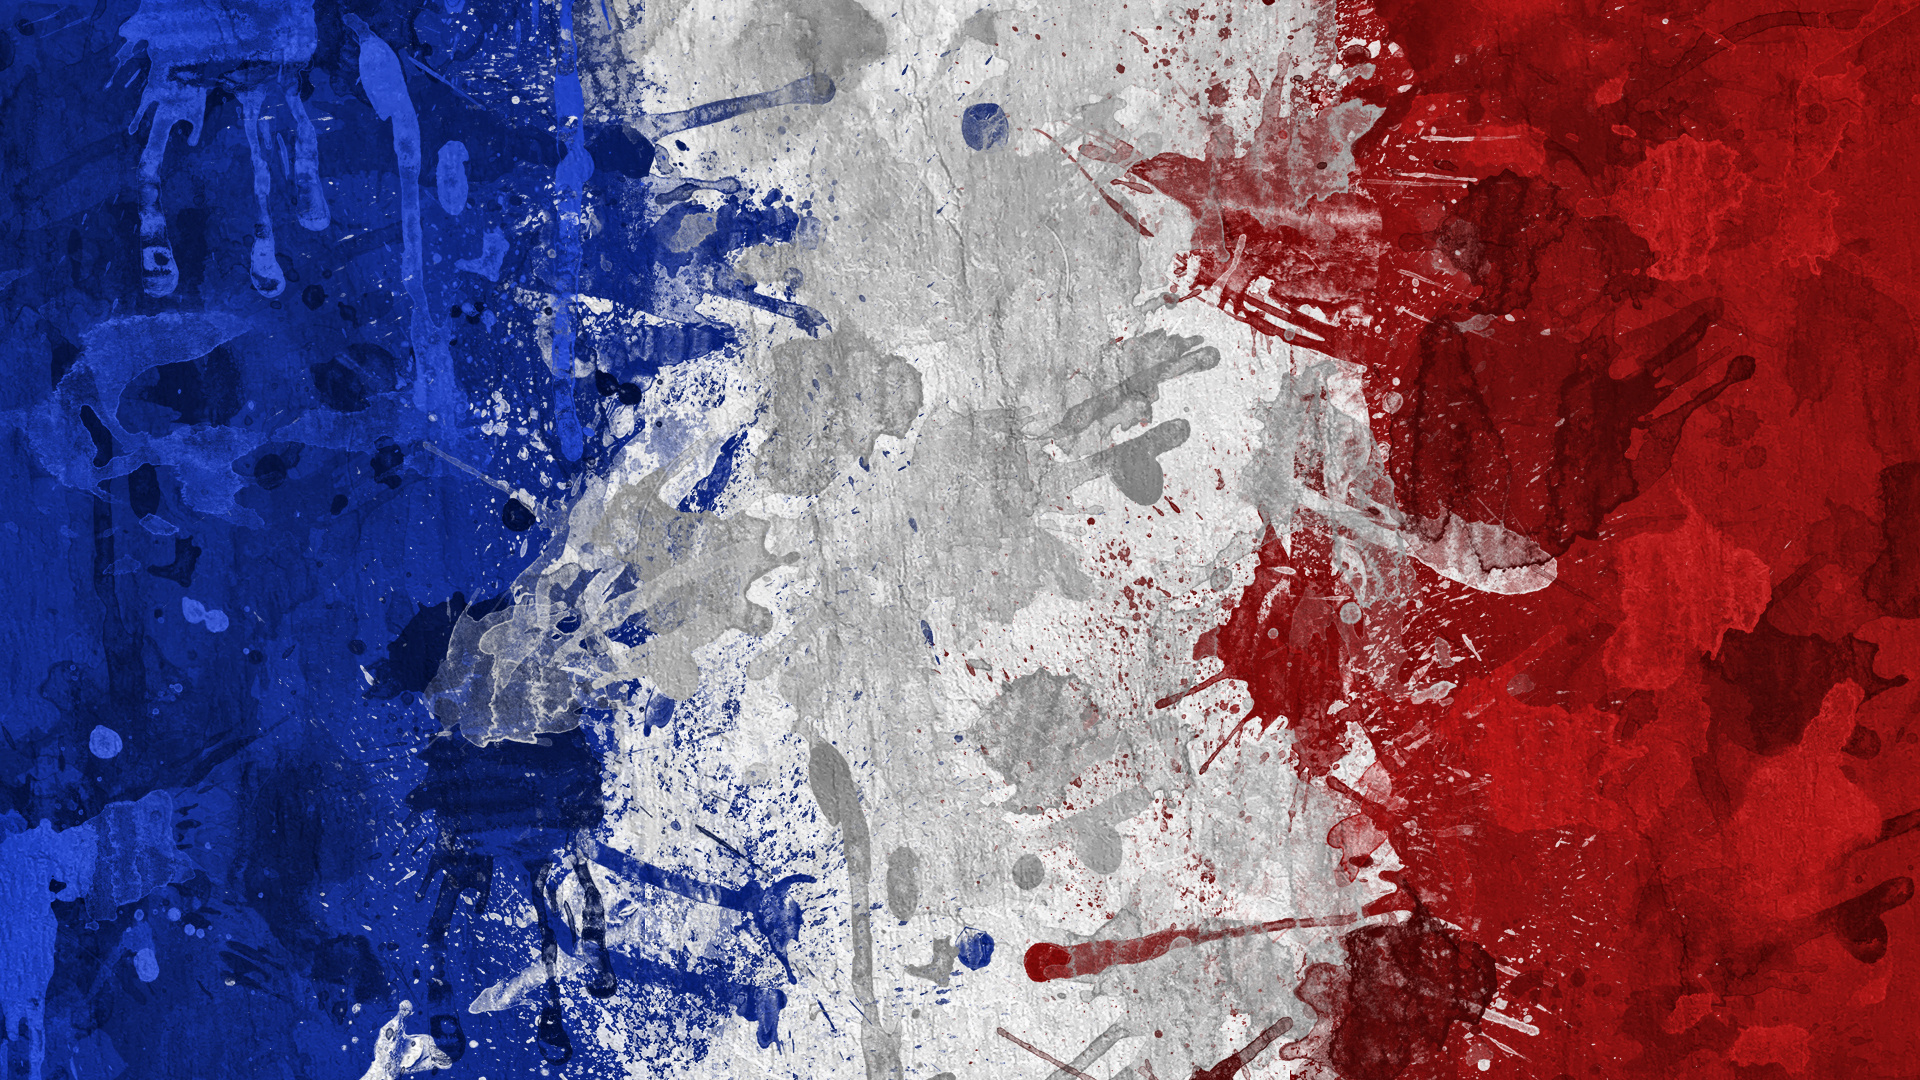 Популярные заставки и фоны Флаг Франции на компьютер